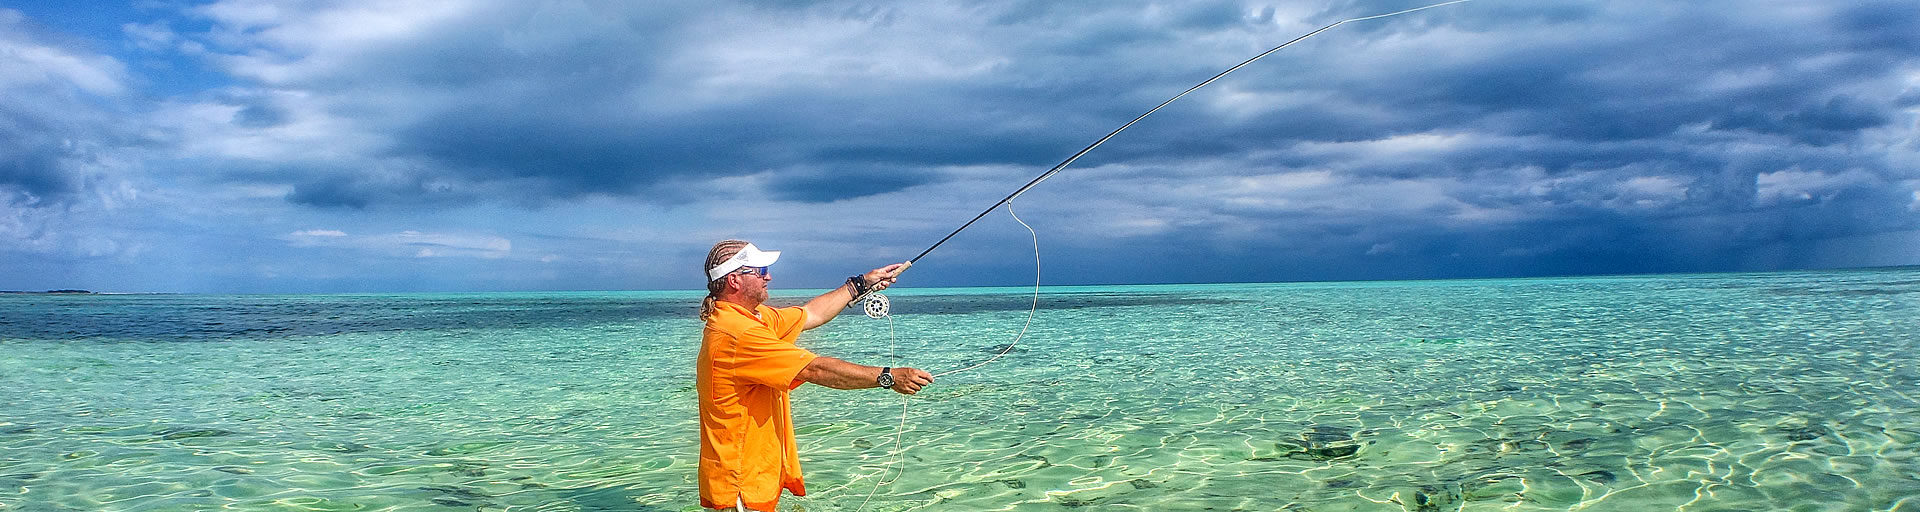 Fishing Adventures in Belize